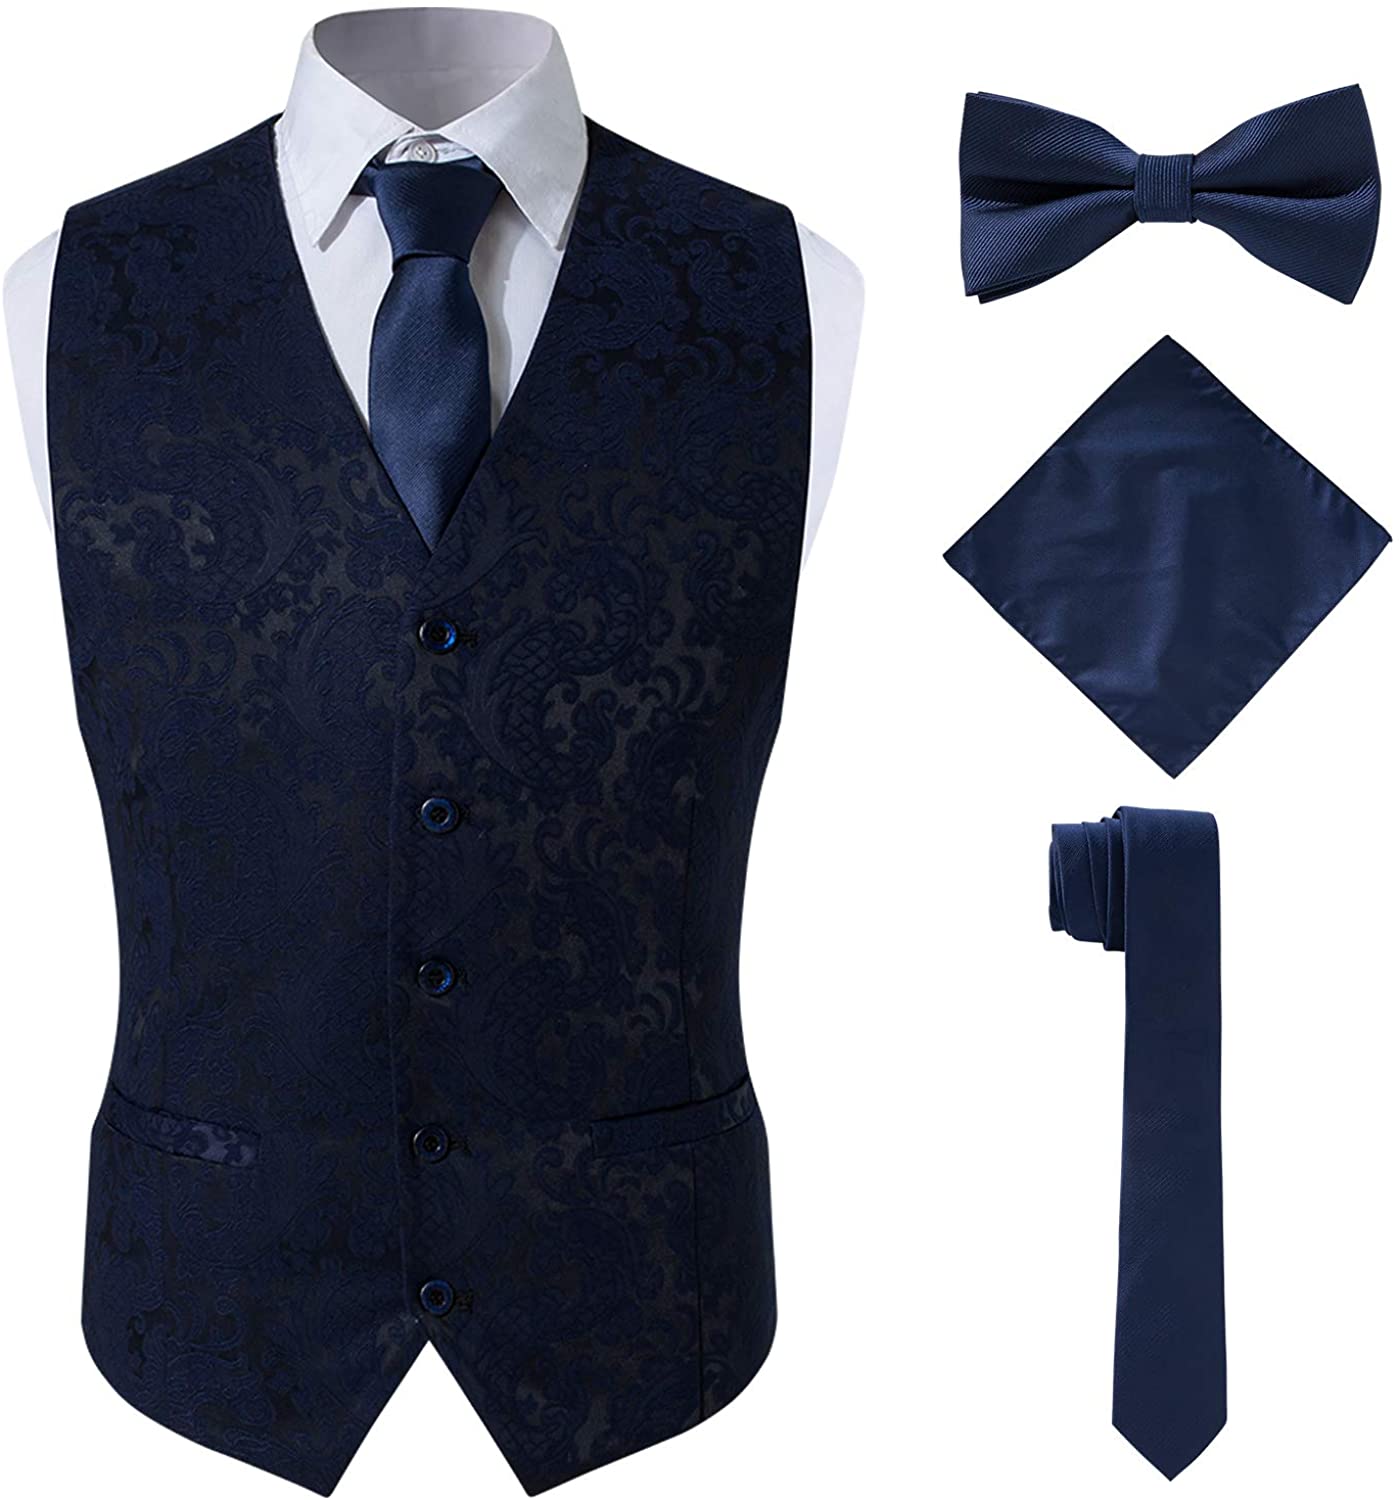 Men Clothing SuiSional Mens 4pc Classic Jacquard Suit Vests with Tuxedo ...